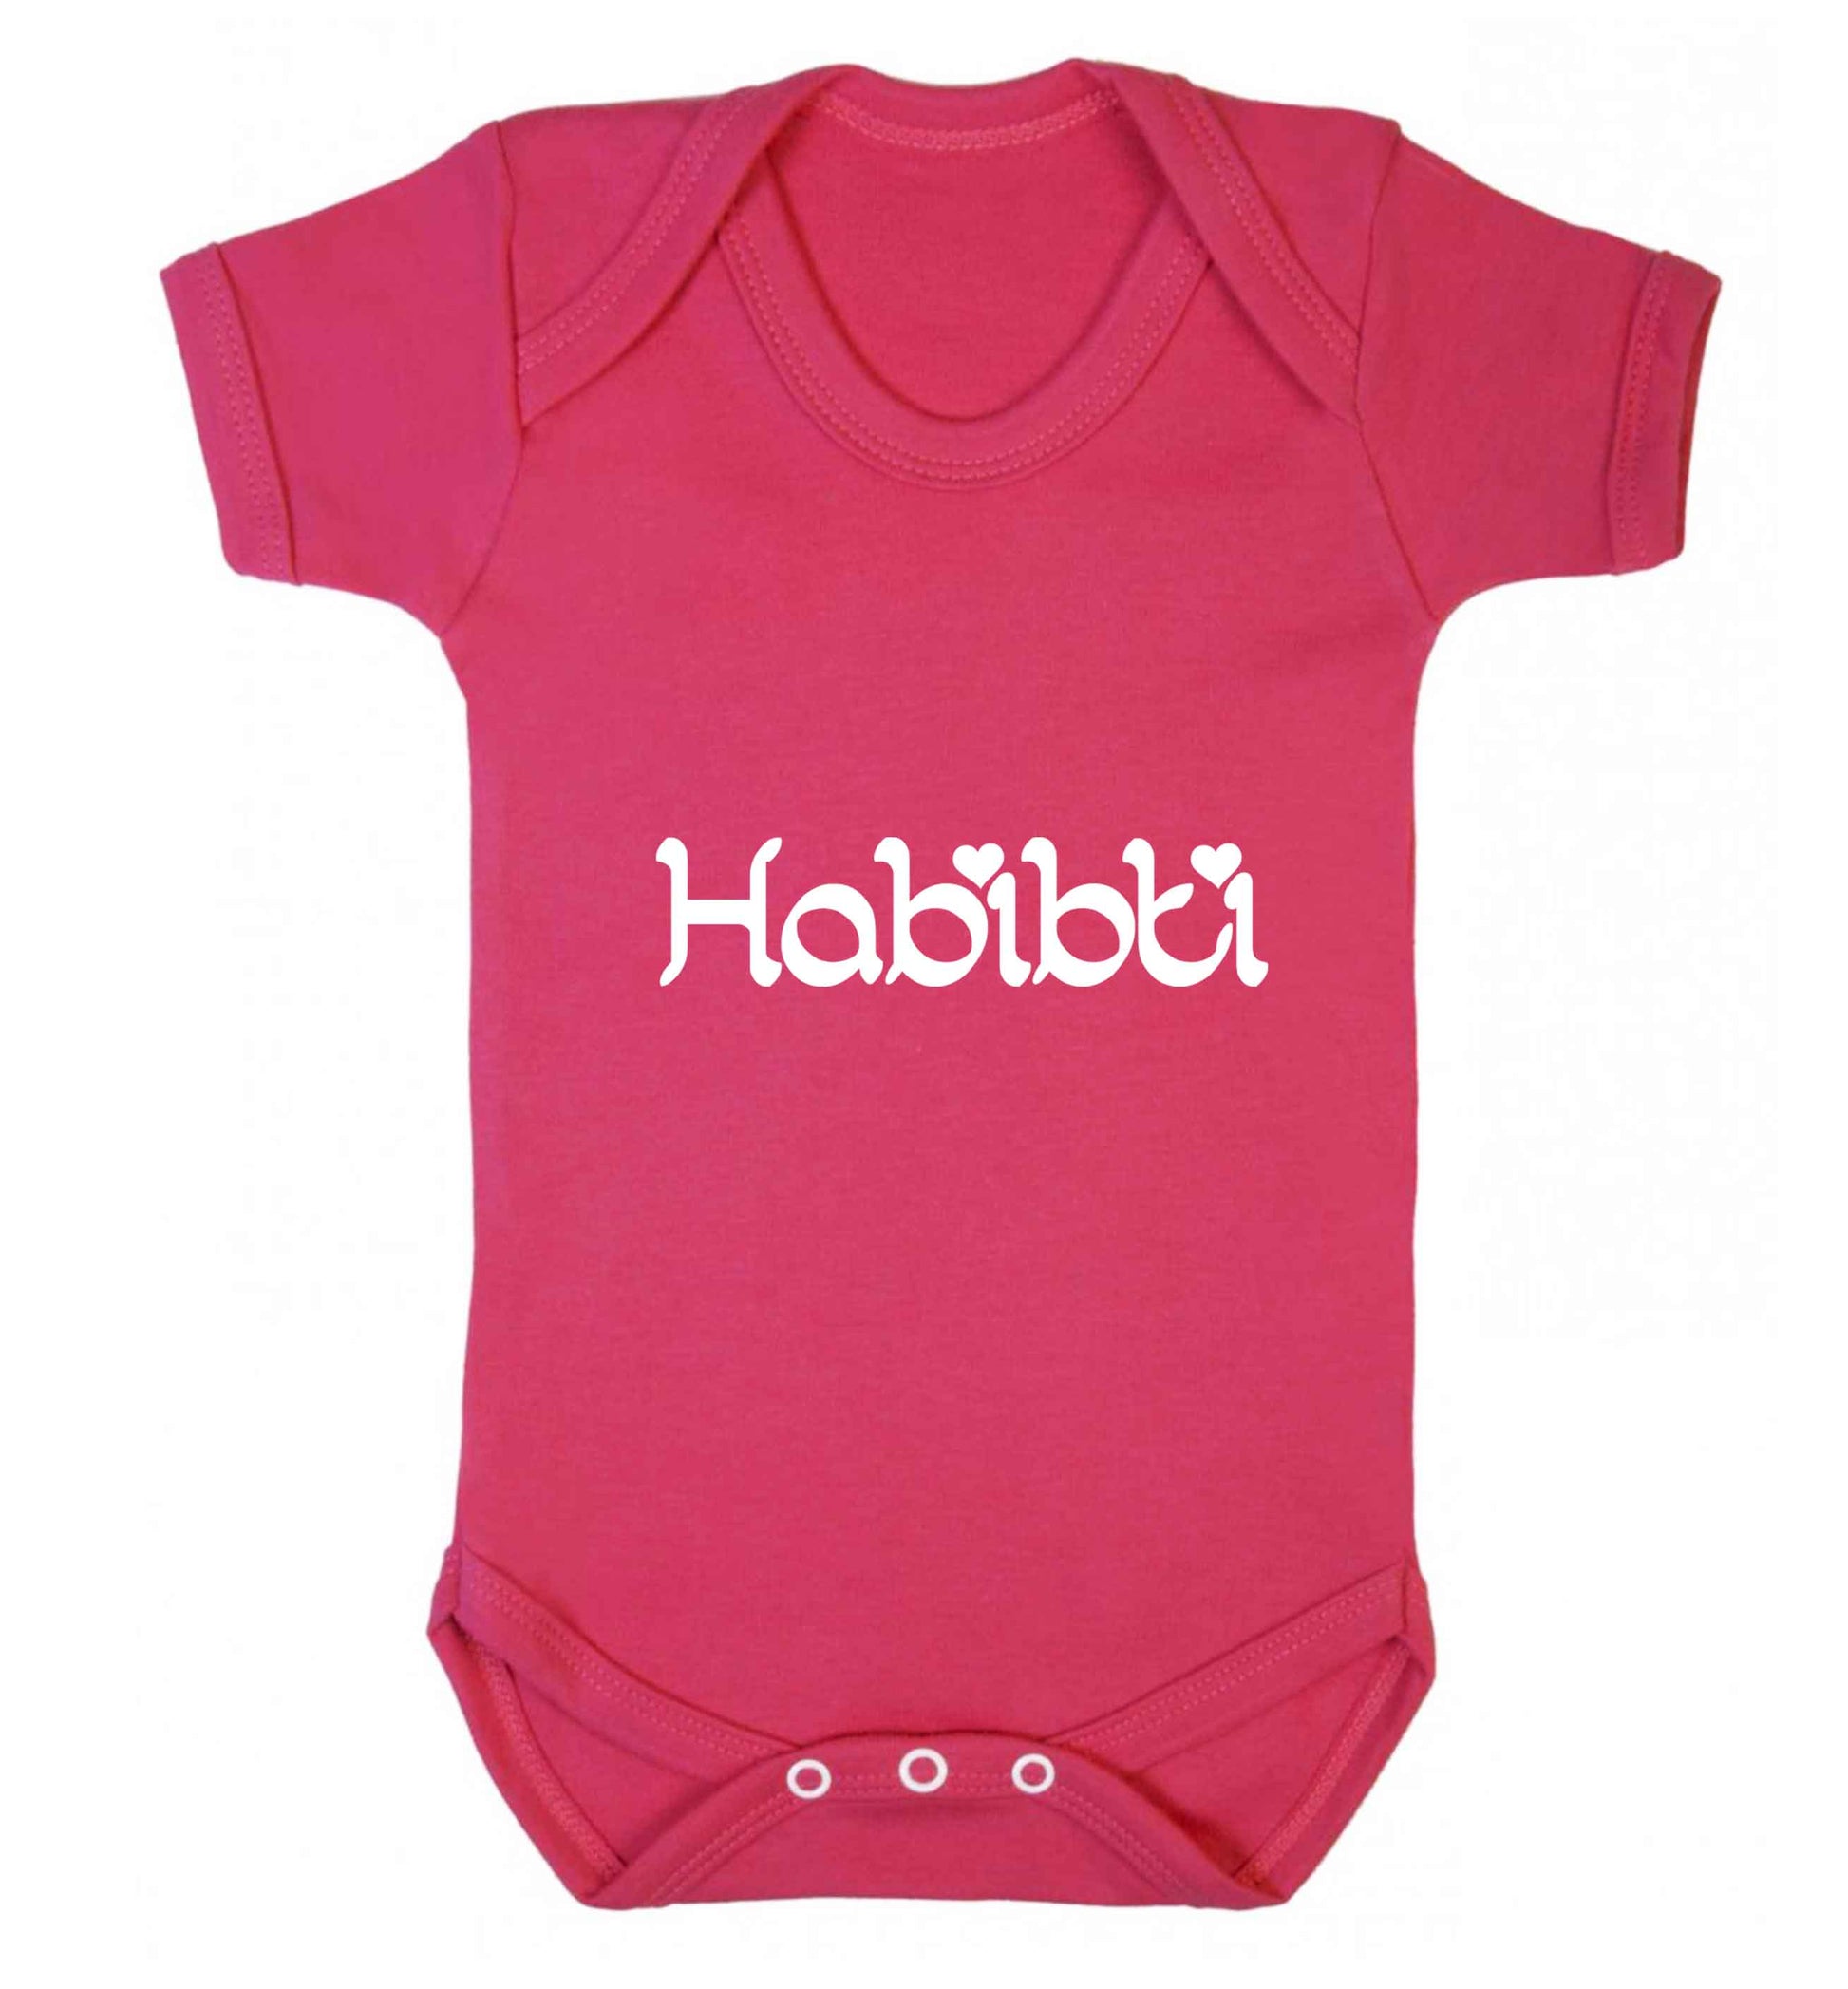 Habibiti baby vest dark pink 18-24 months